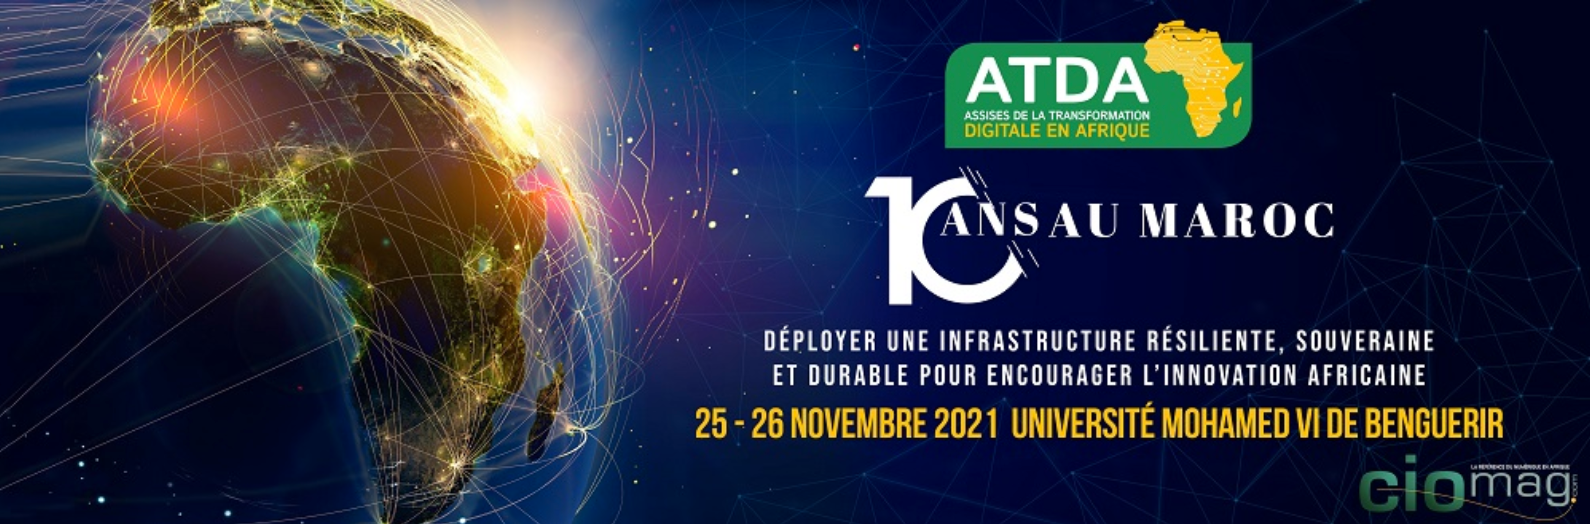 La 10ème édition des assises de la transformation digitale en Afrique se tiendra à Benguérir du 25 au 26 novembre !!